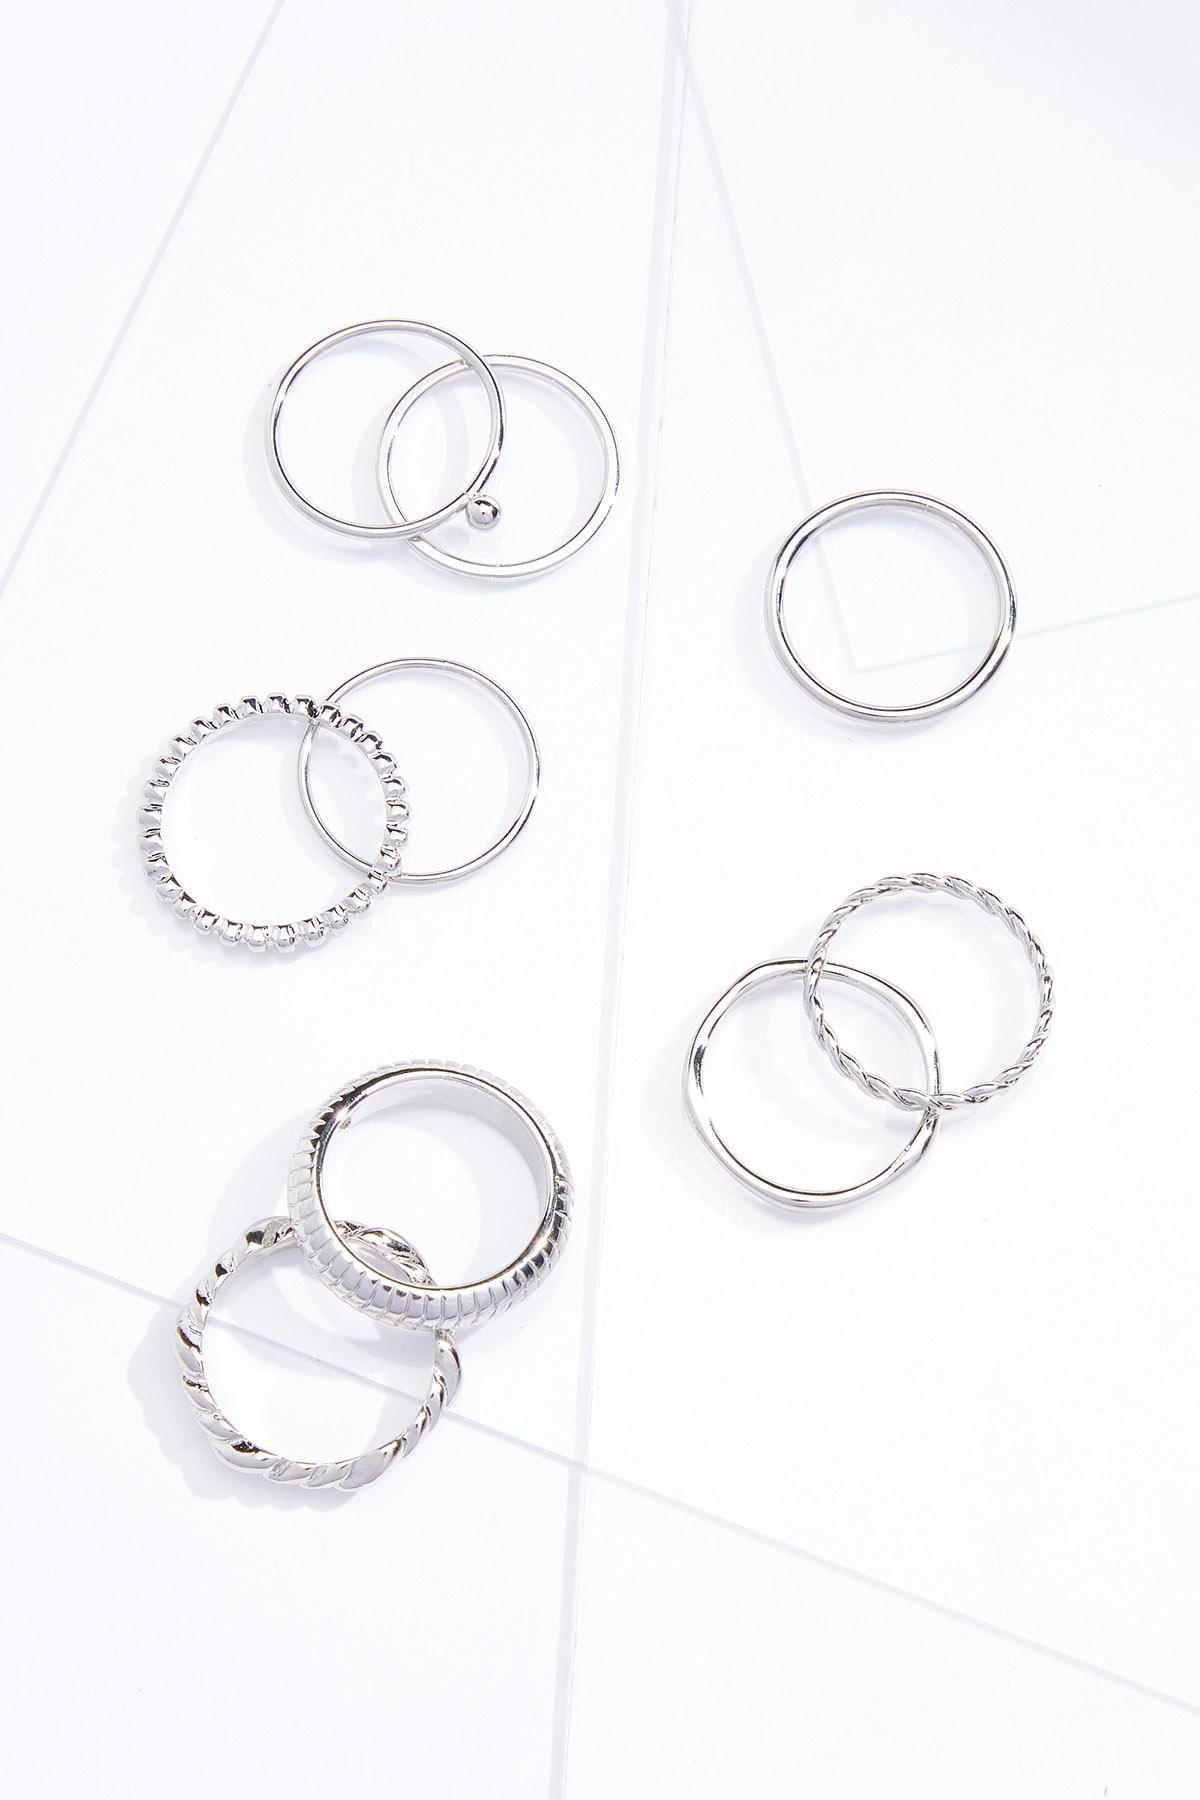 Delicate Metal Ring Set